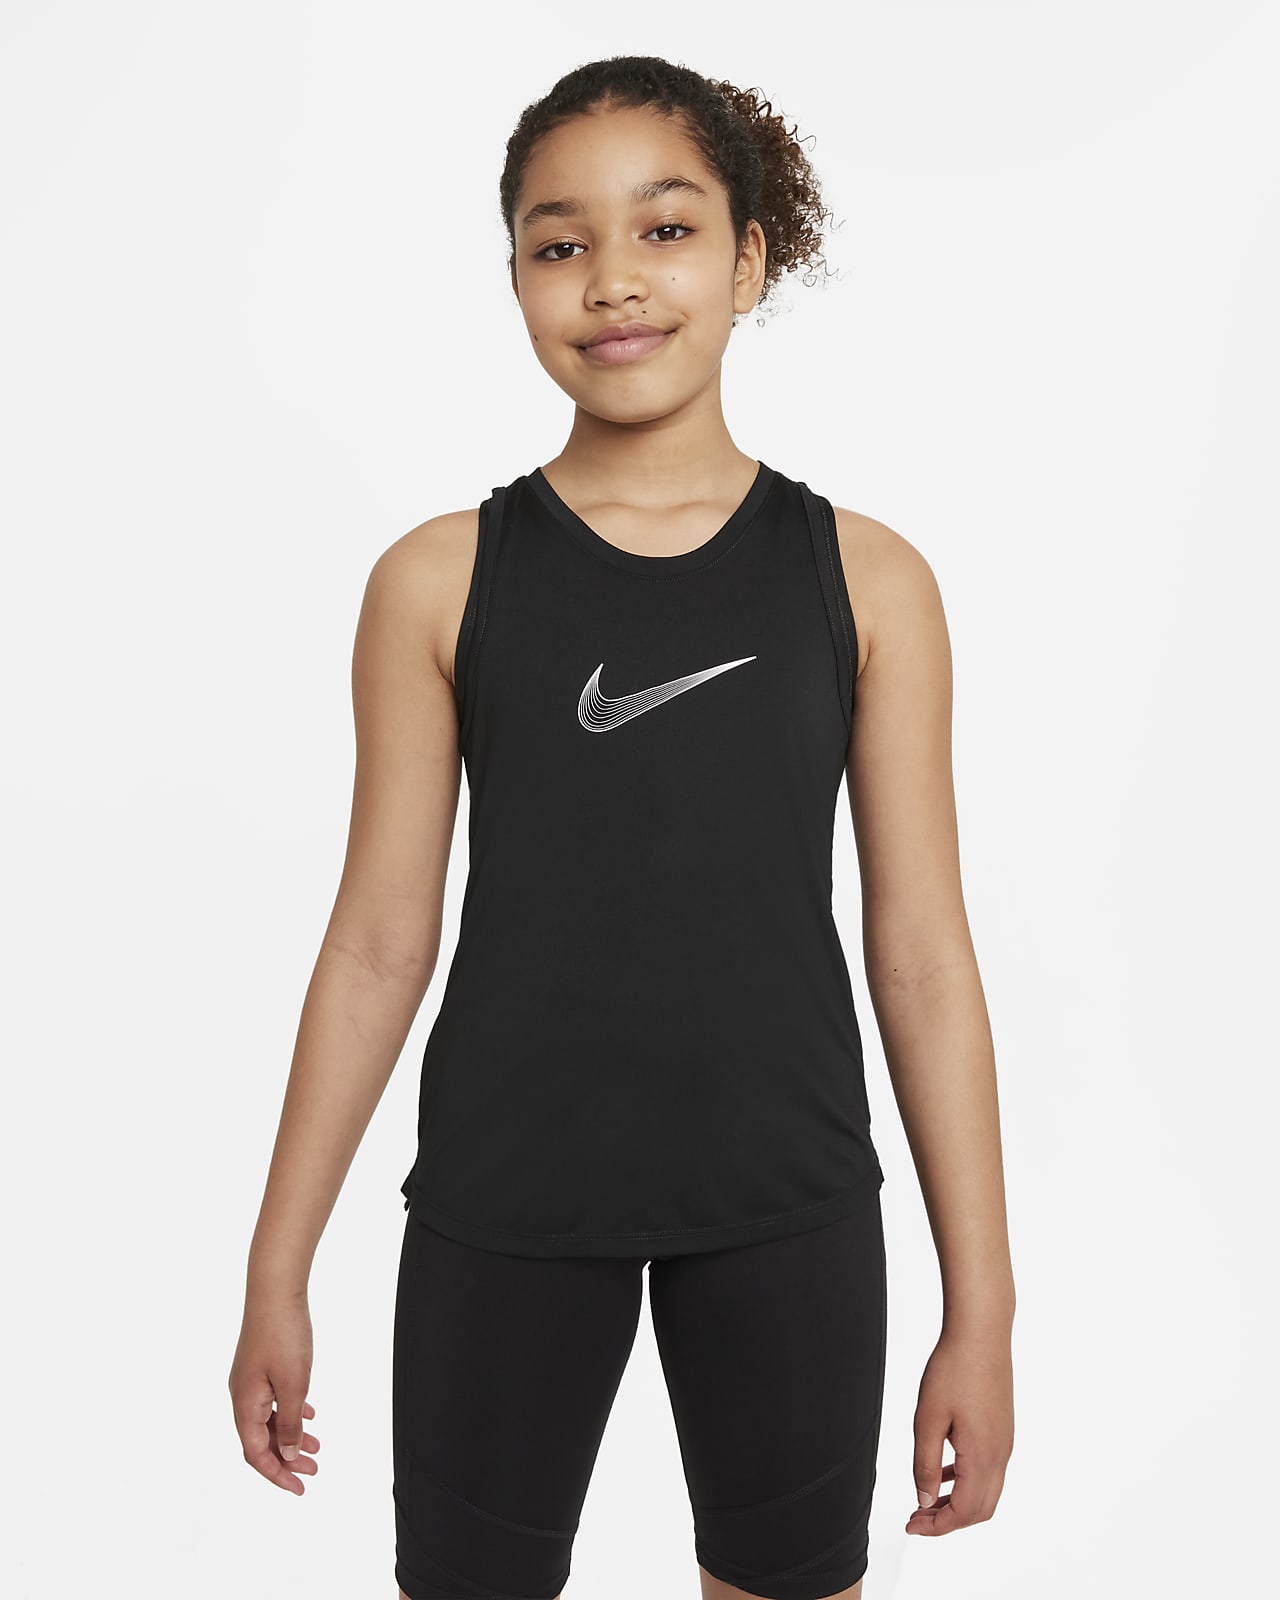 Nike Dri-FIT One Big Kids' (Girls') Training Tank Top.